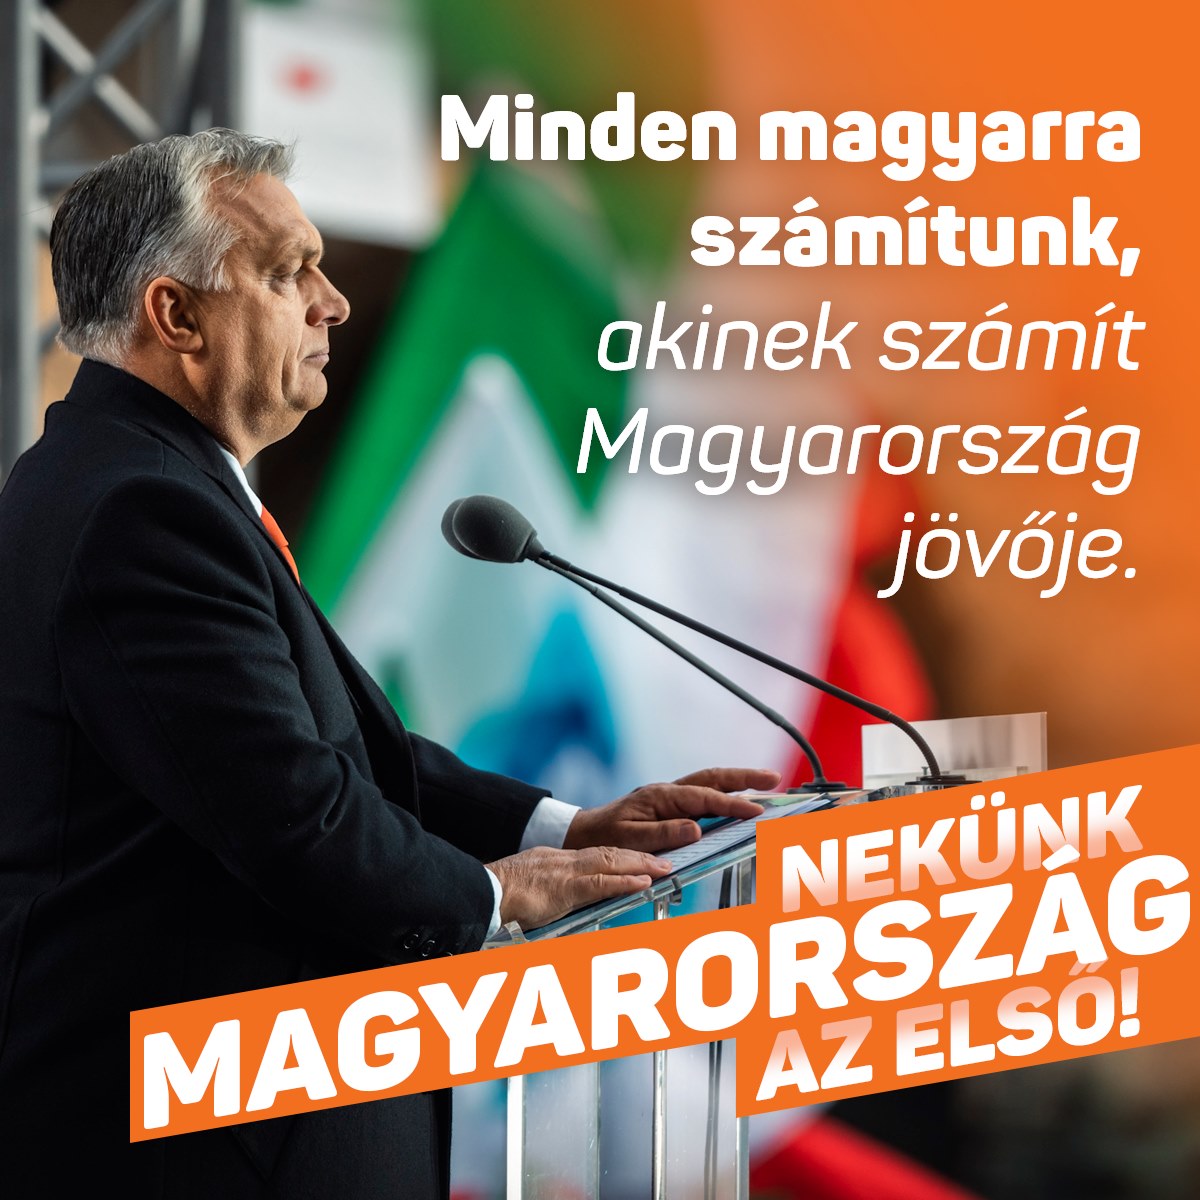 Minden magyarra számítunk, akinek számít Magyarország jövője. Nekünk Magyarország az első!